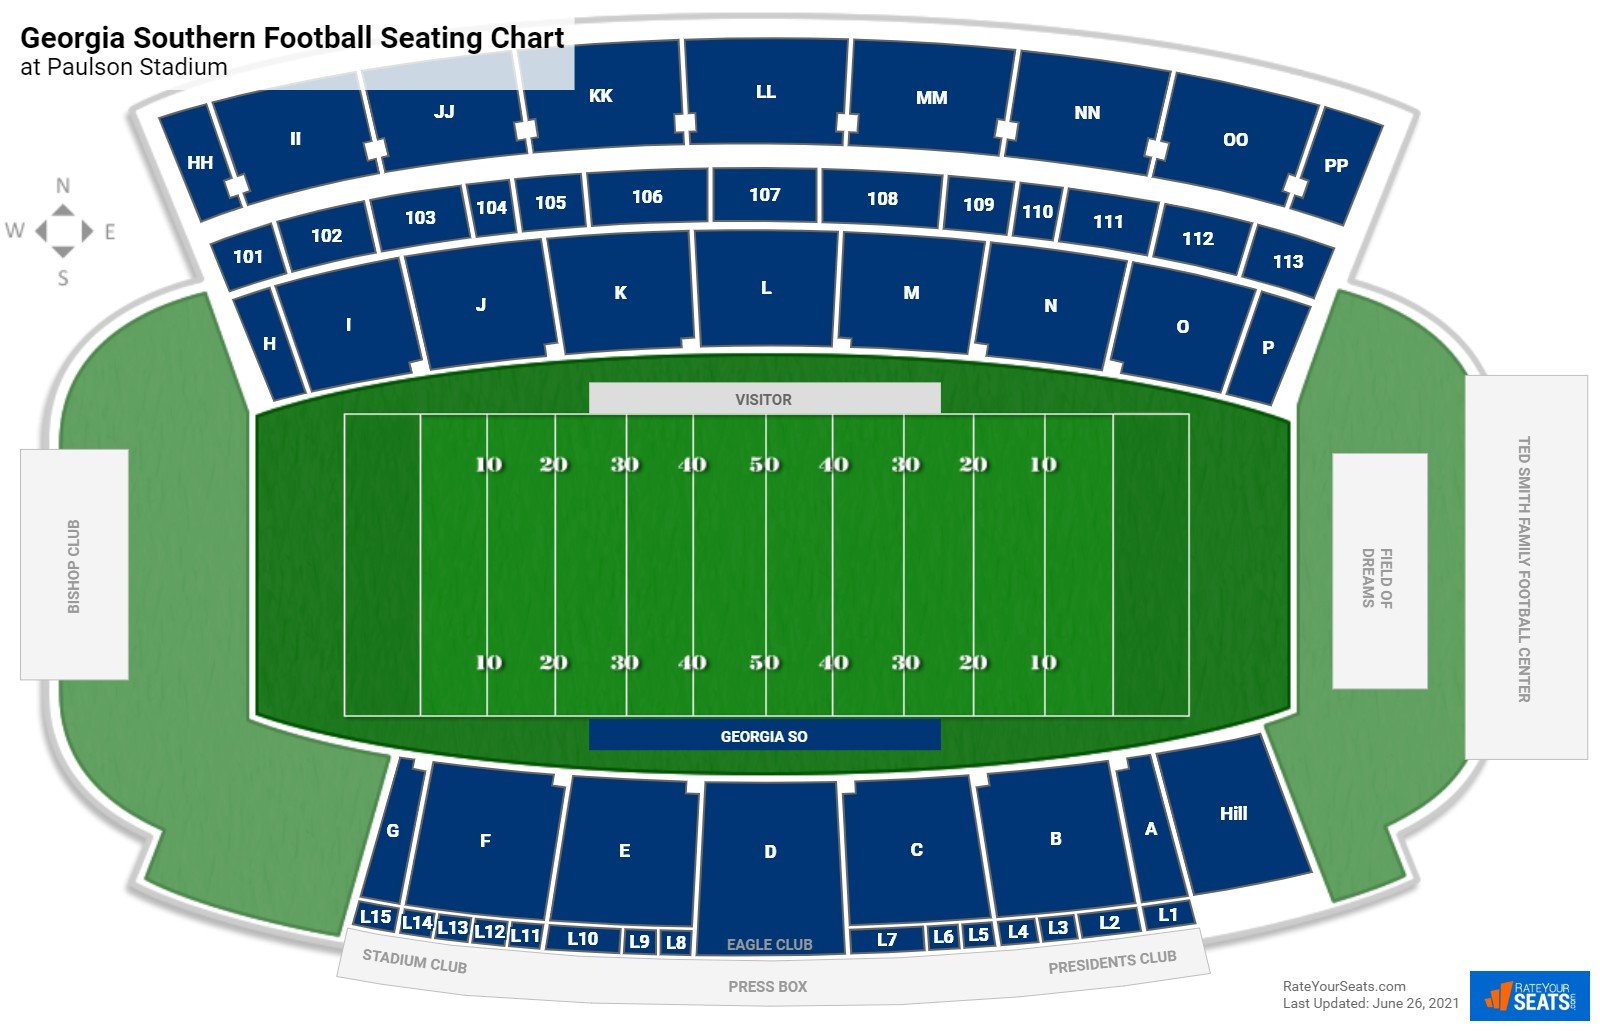 Georgia Southern Eagles Seating Chart at Paulson Stadium